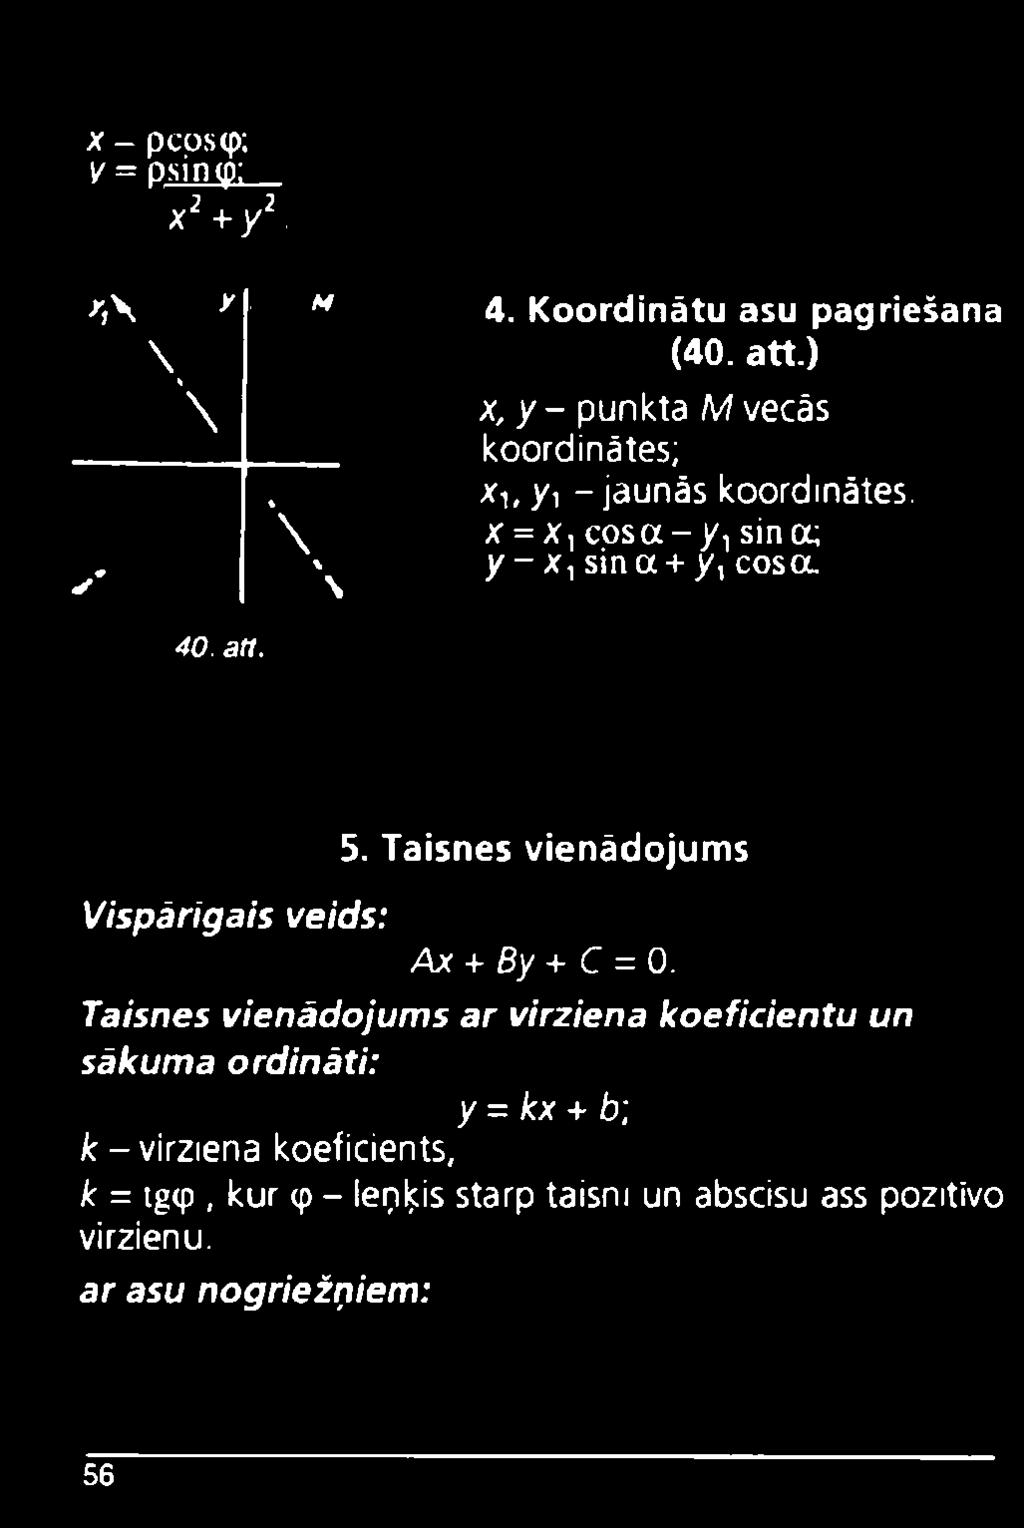 x = Xļ c o s a - /, sina; y - x ysina + y, cosa. Vispārīgais veids: 5. Taisnes vienādojums Ax + By + C = 0.